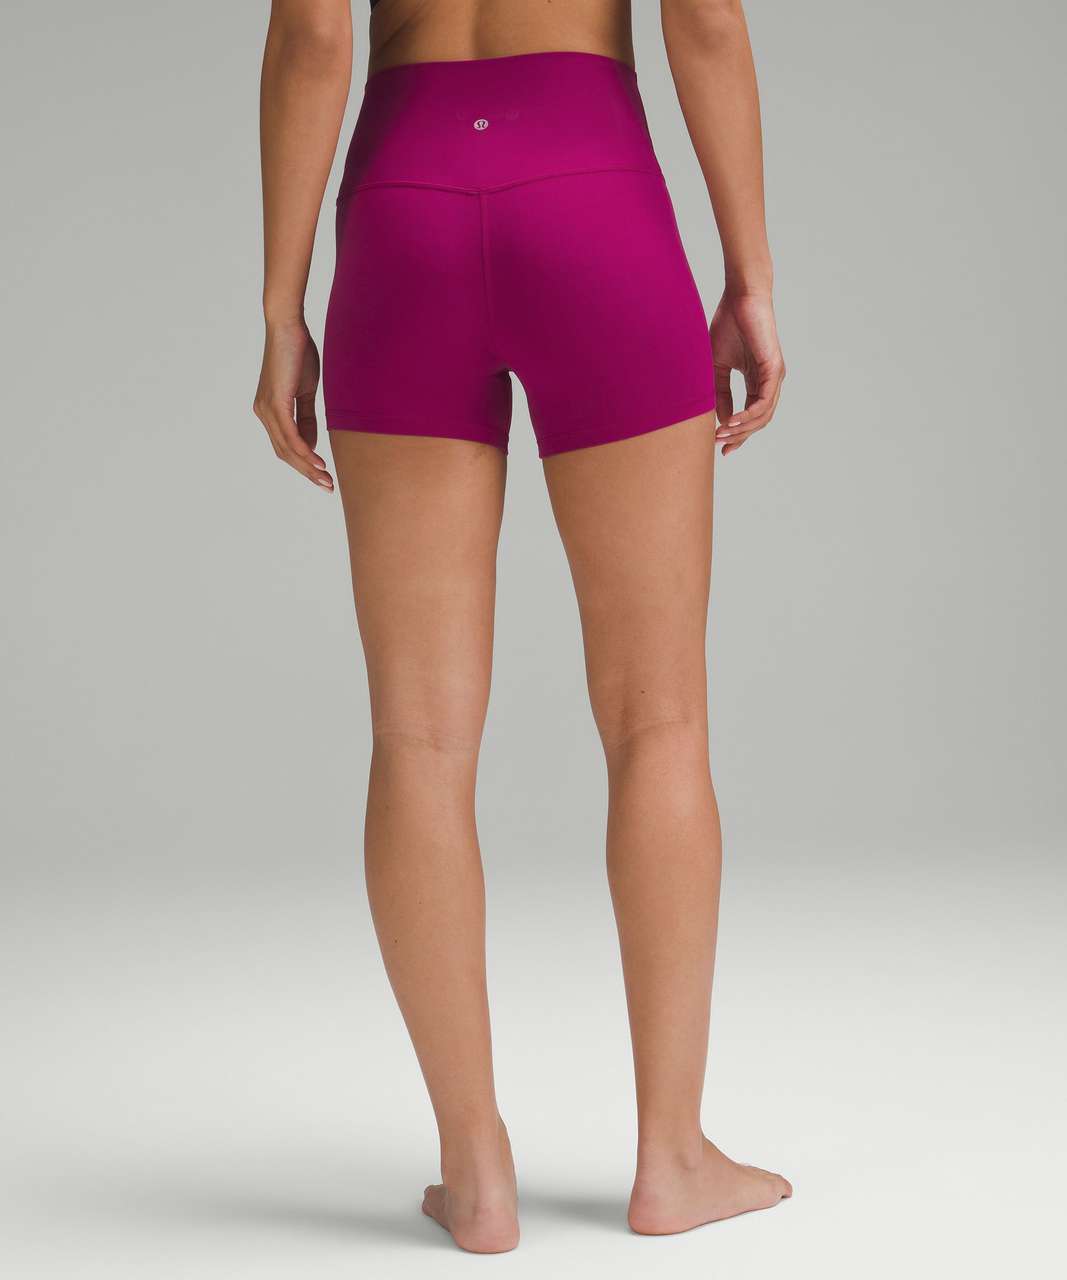 lululemon Align™ High-Rise Short 4, Women's Shorts